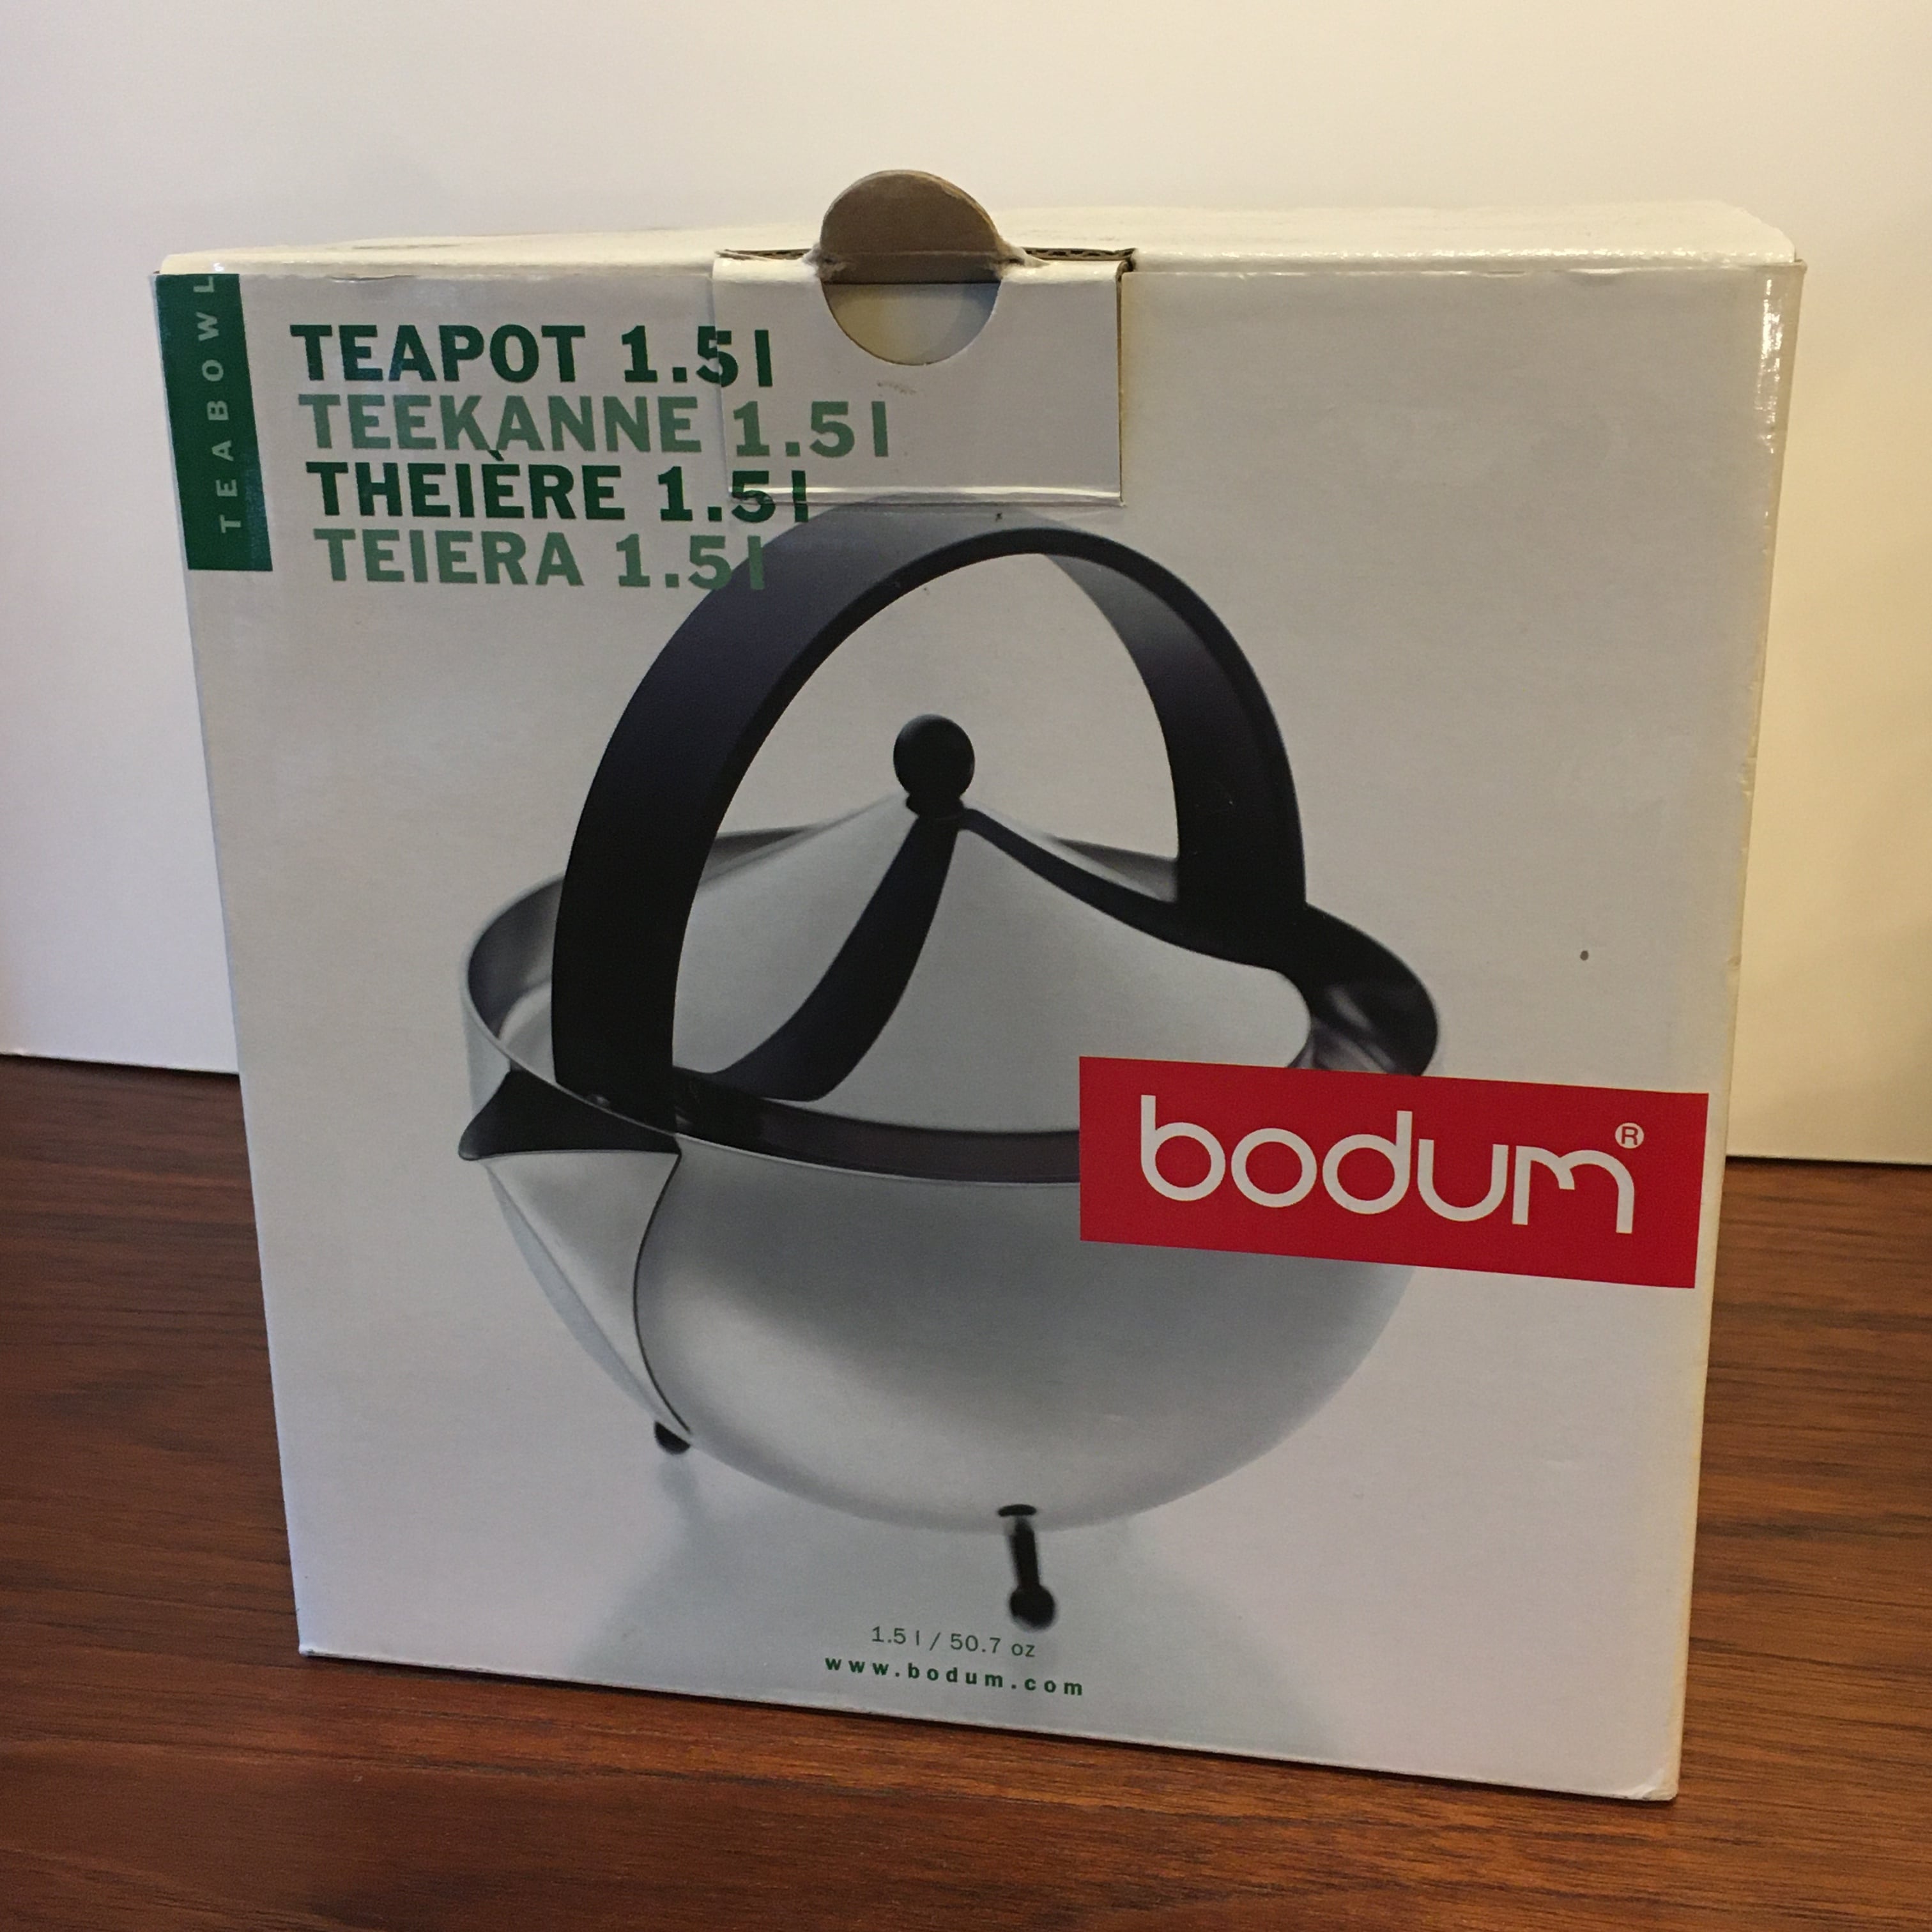 Teaball' Teapot Designed by Carsten Jorgensen for Bodum 1980's